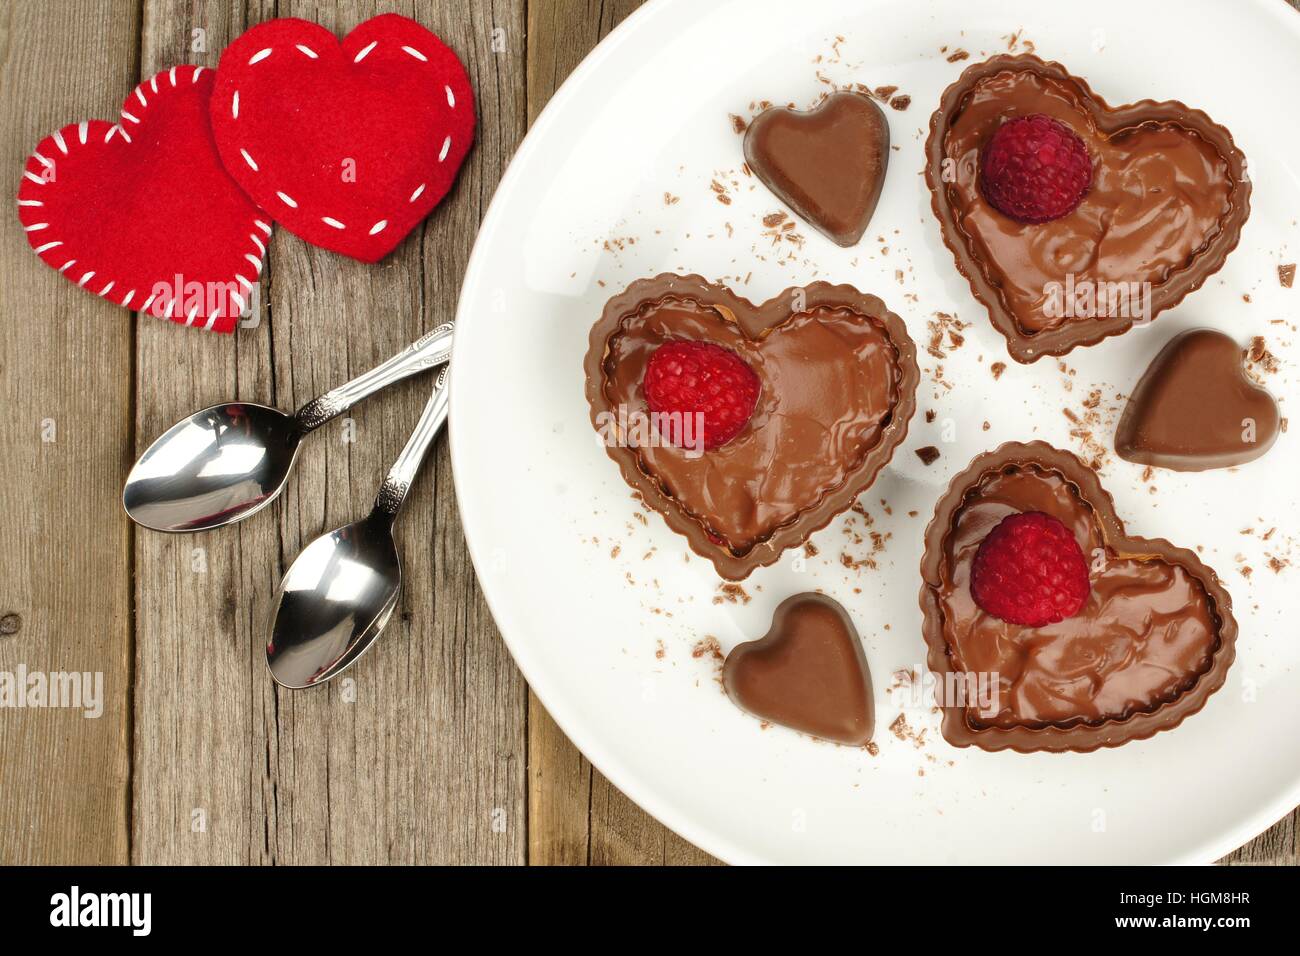 Chocolat en forme de coeur avec des coupes à dessert au lait et framboises sur plaque avec fond en bois Banque D'Images